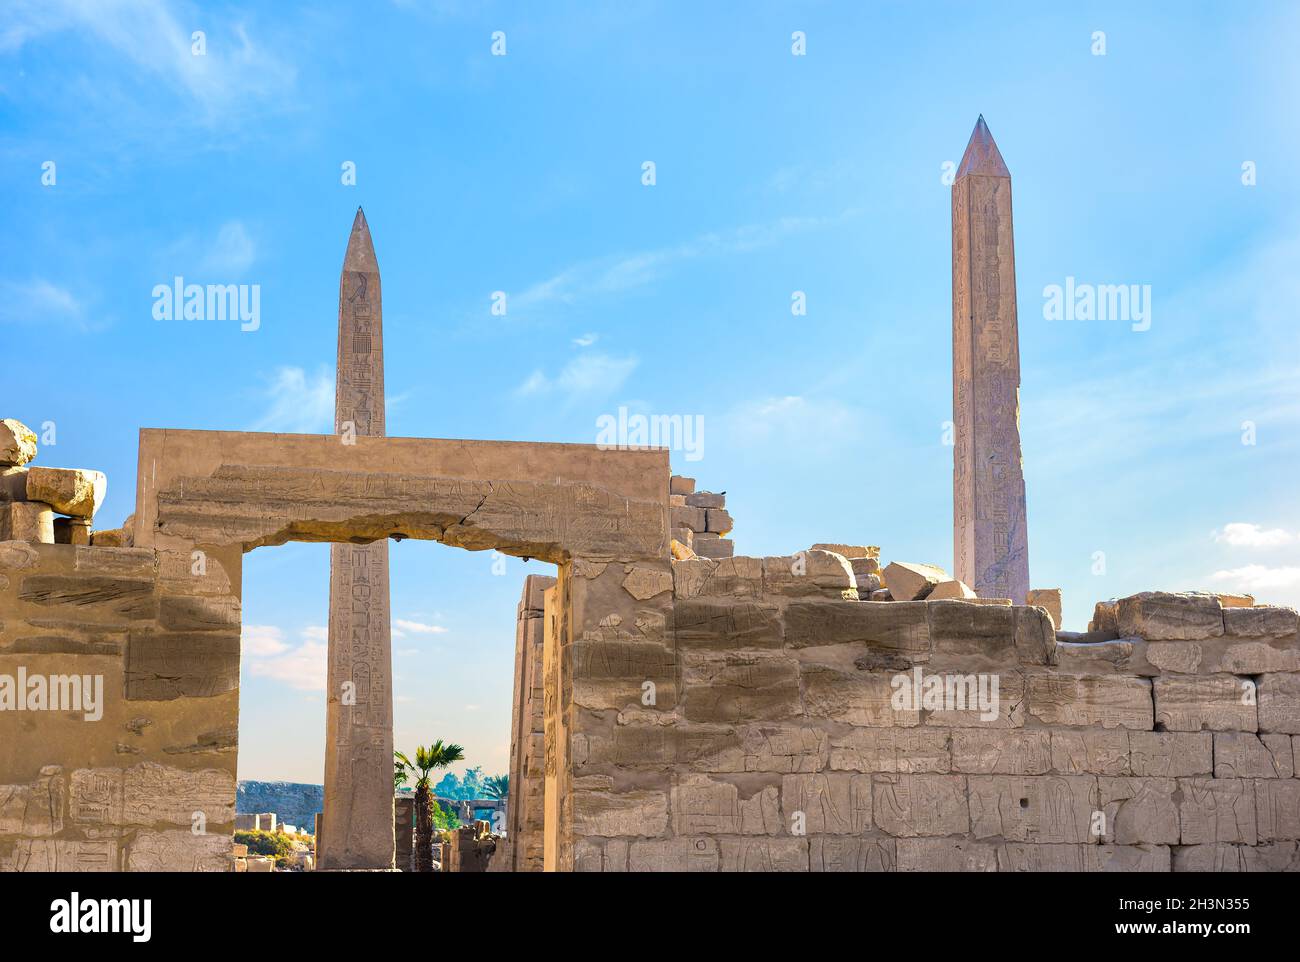 Los obeliscos en el templo de Karnak Foto de stock